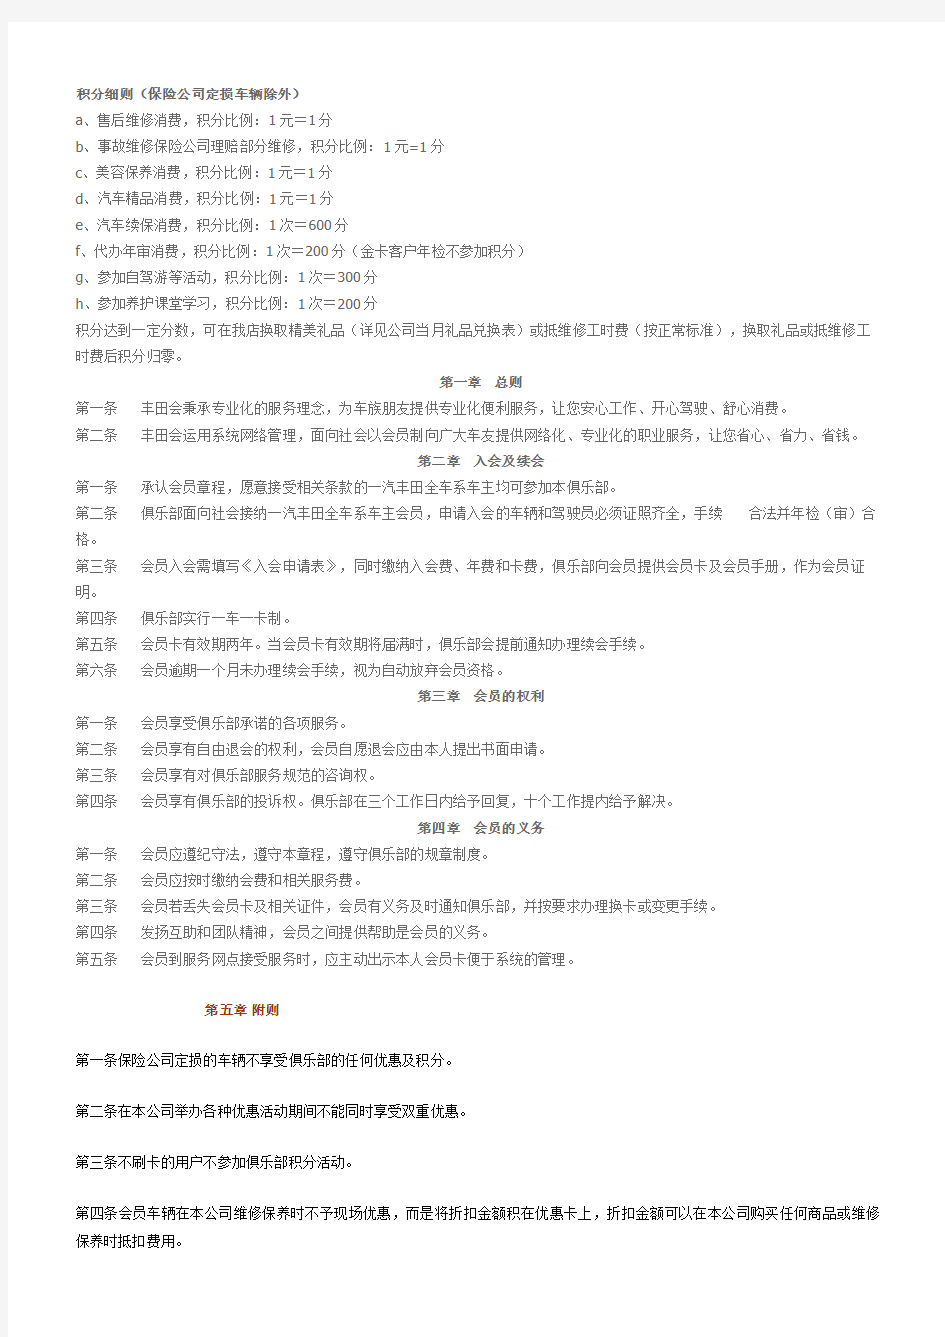 丰田汽车会员章程及规则